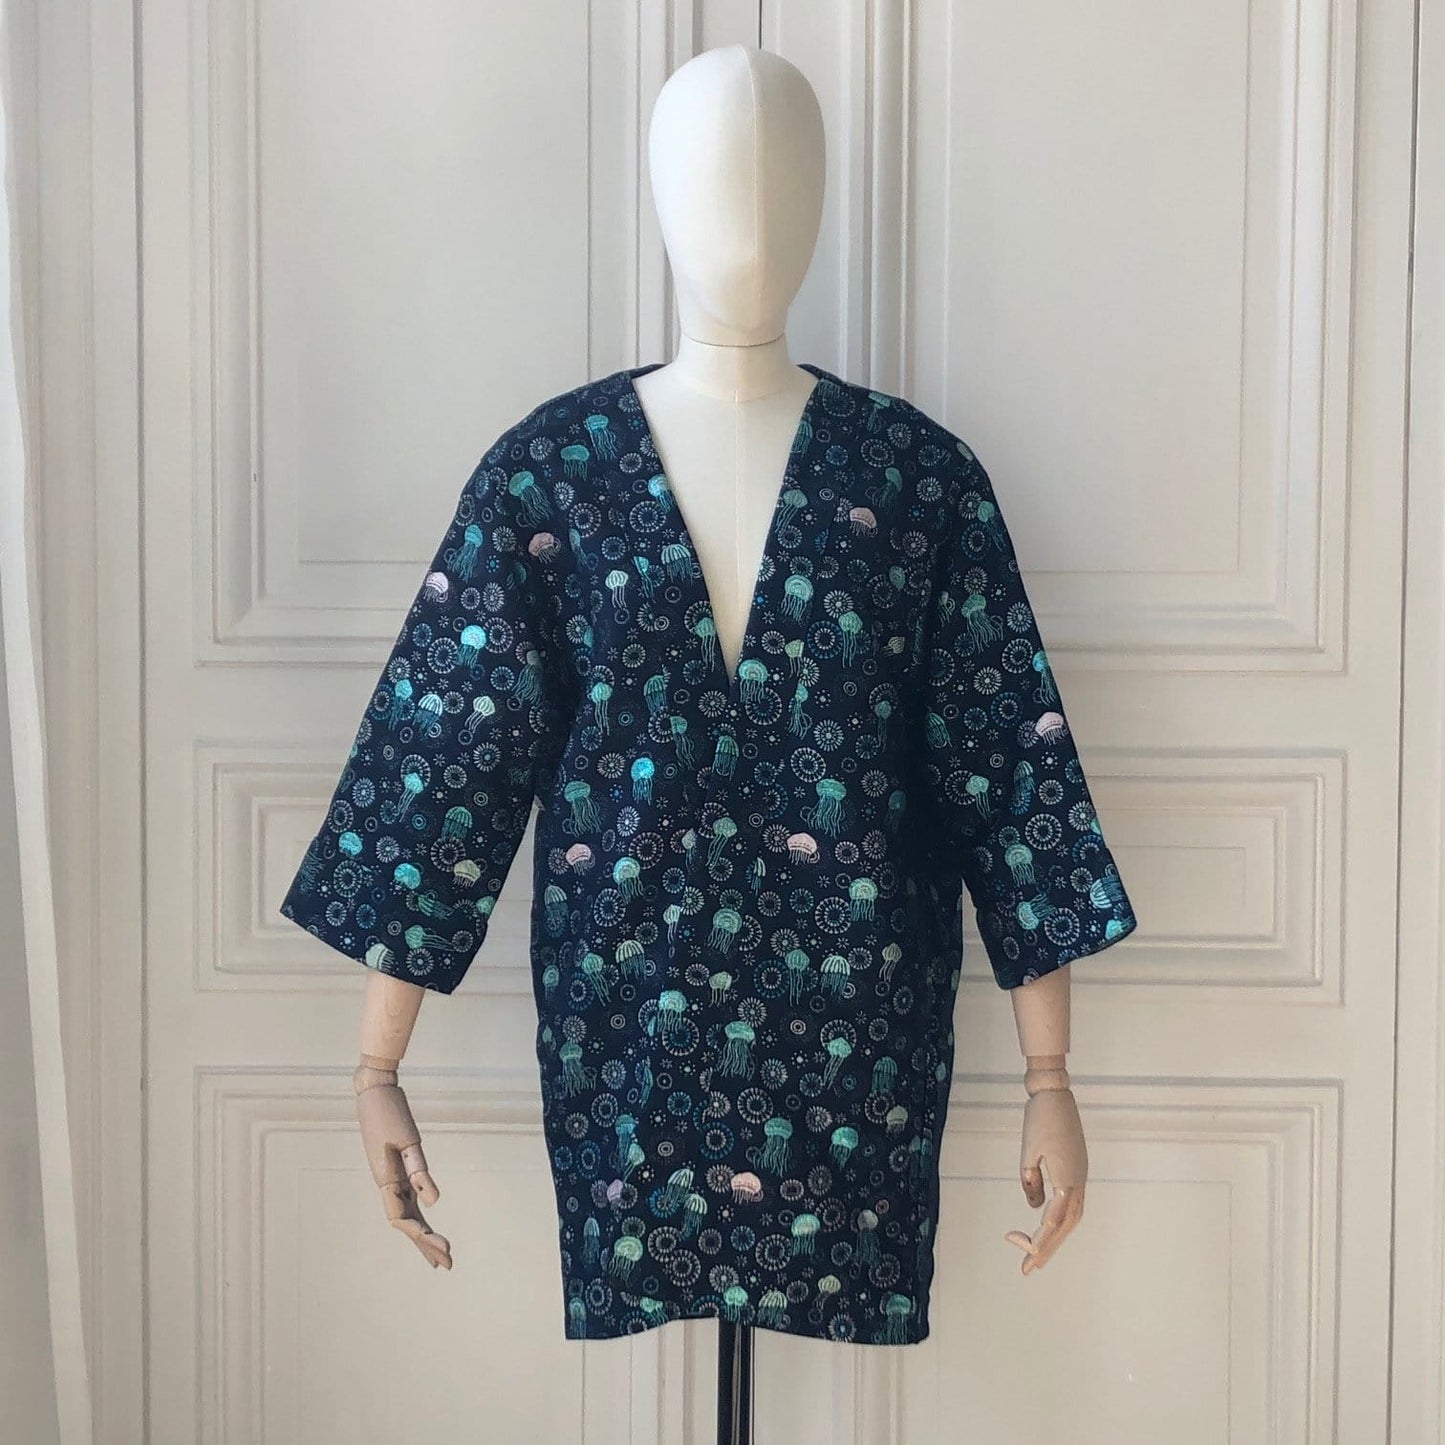 Kimono en tweed bleu, turquoise et argent méduses tissé et fabriqué en France